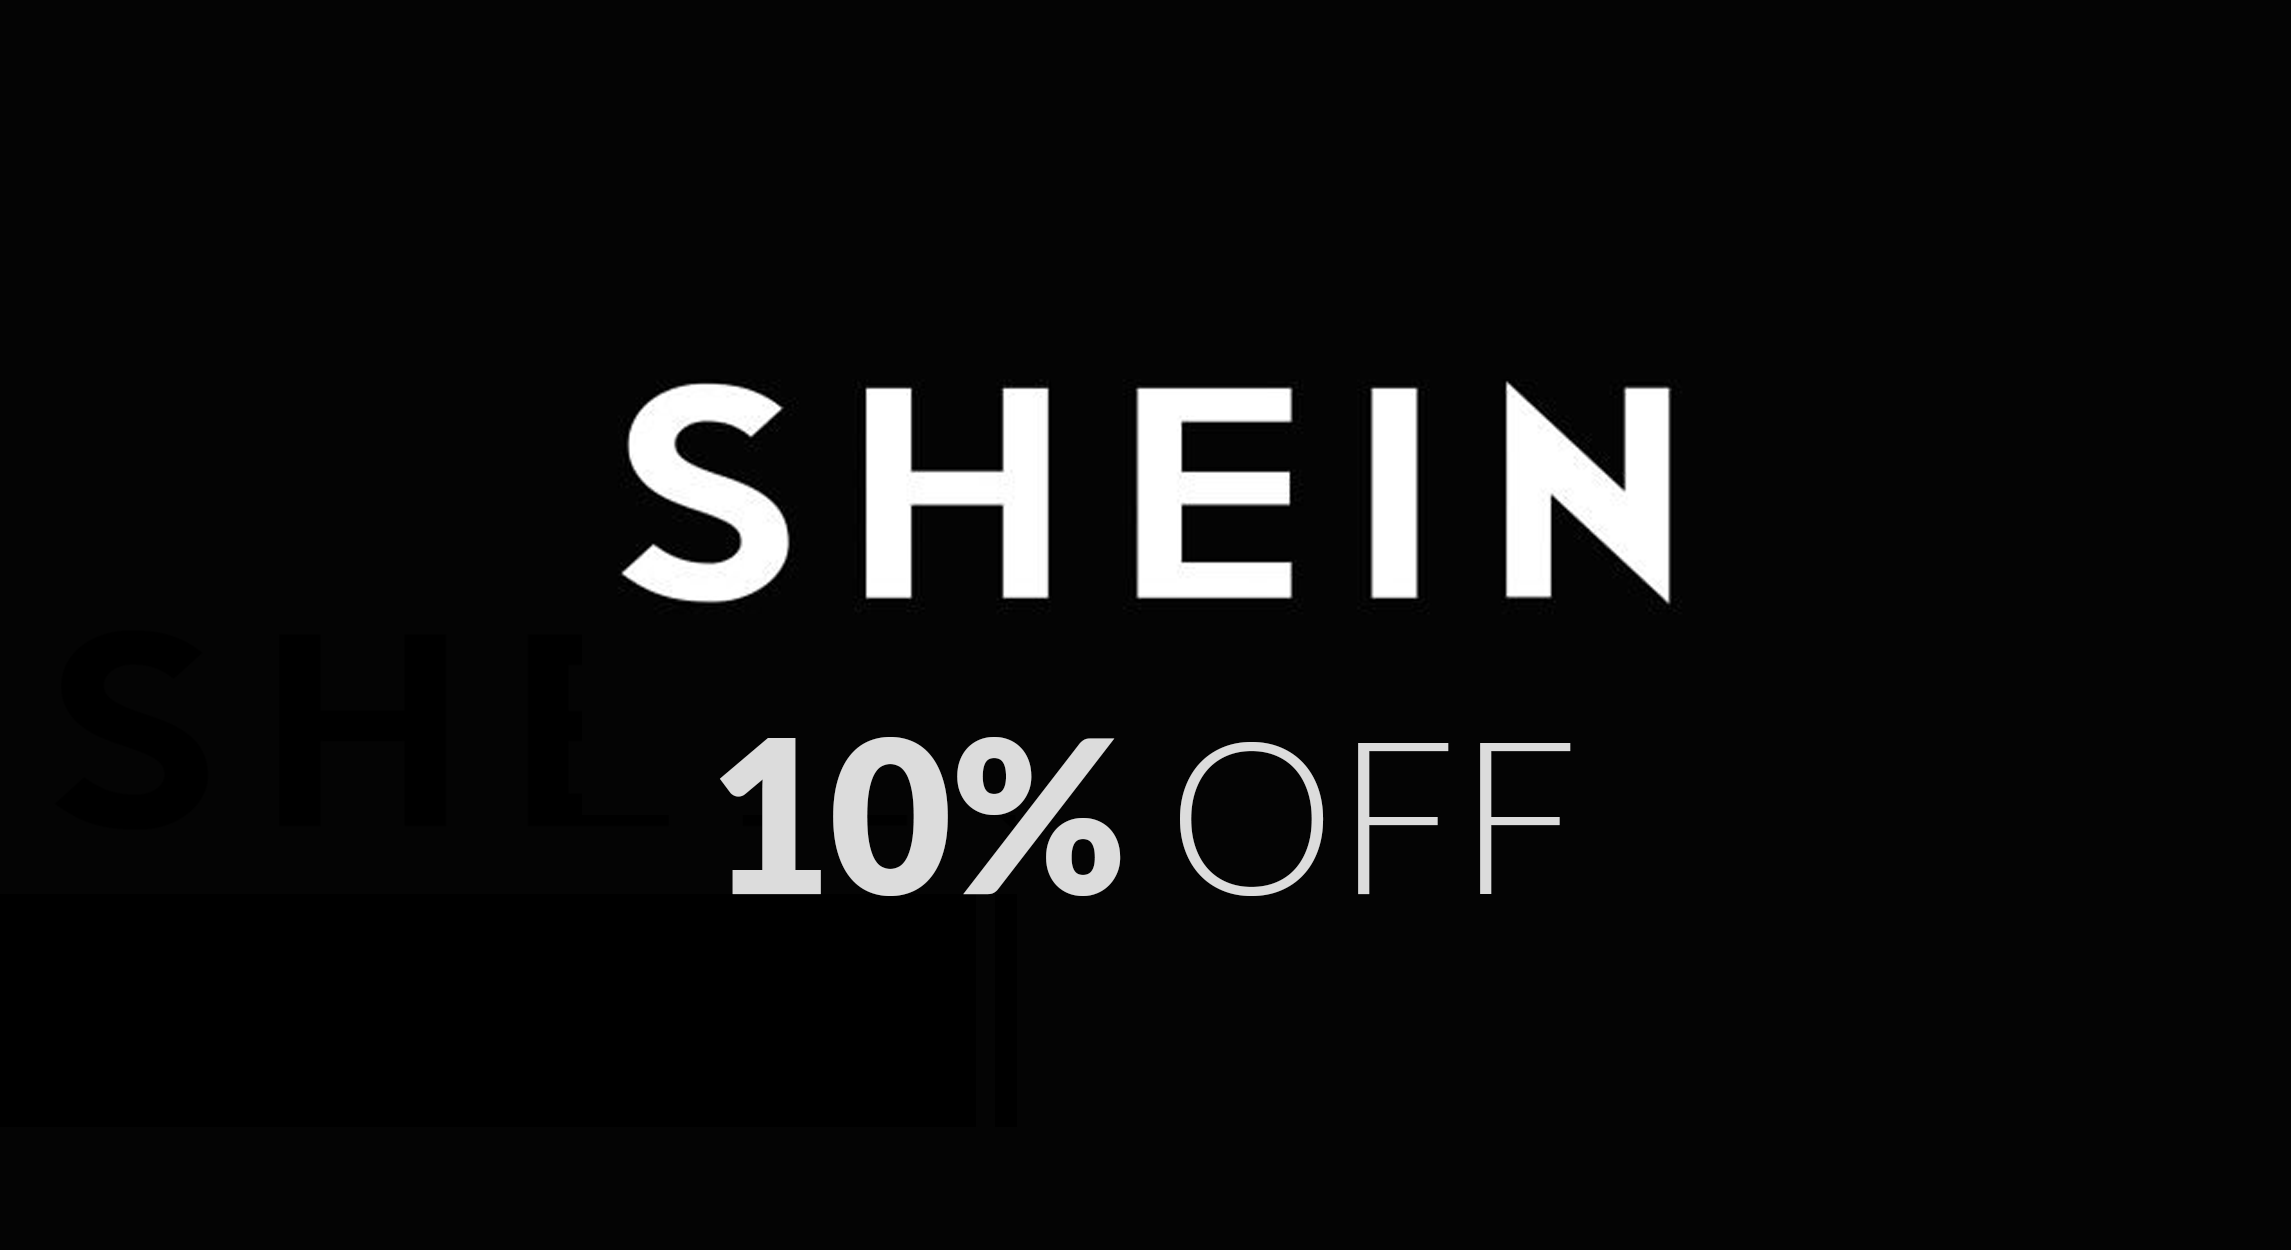 Shein 10% off